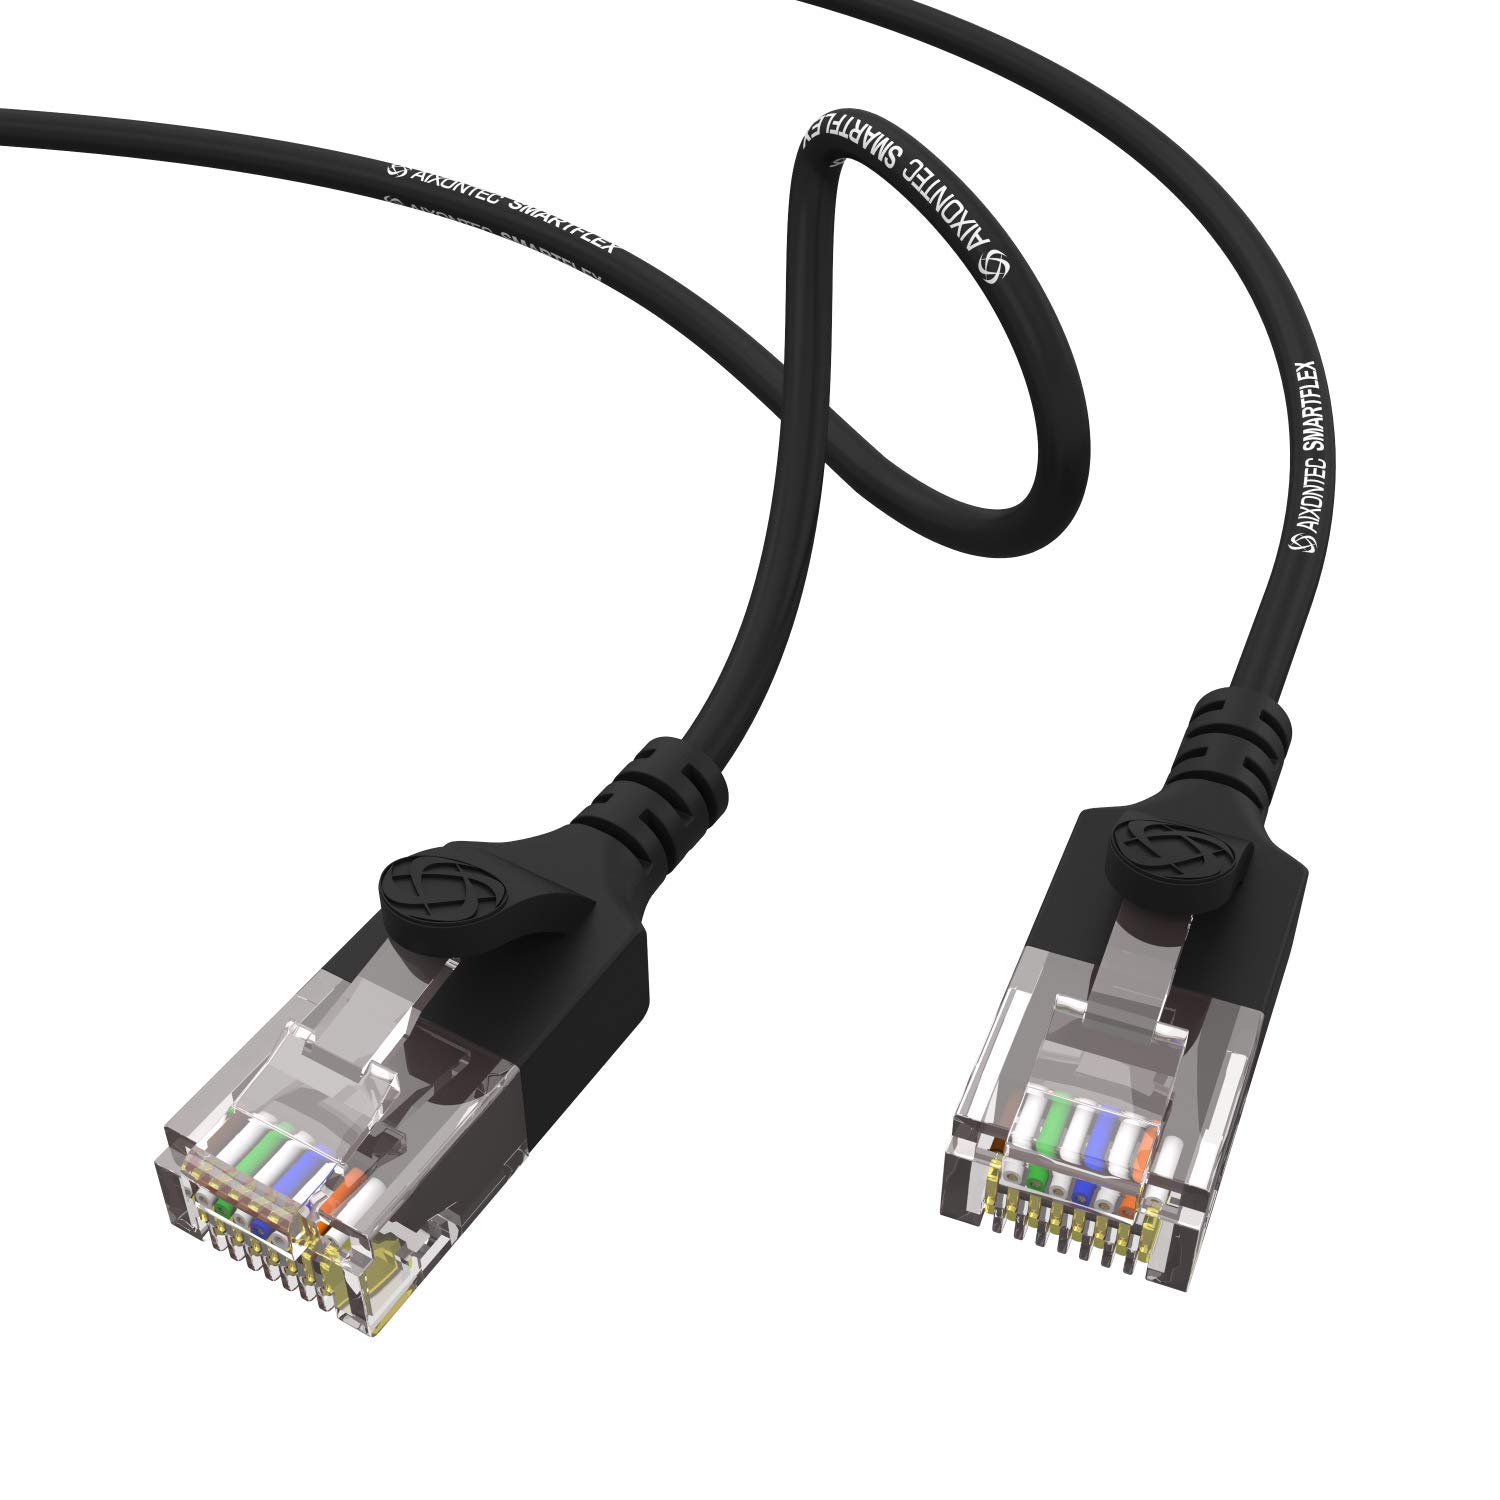 AIXONTEC 2 Stück 1,5 m Cat6 Gigabit Ethernet Netzwerkkabel Schwarz dünnes lan Kabel mit 2,8 mm Kabeldurchmesser 250 MHz für Switch Router Modem Patchpanel Access Point IP Kamera ps4 smart tv pc